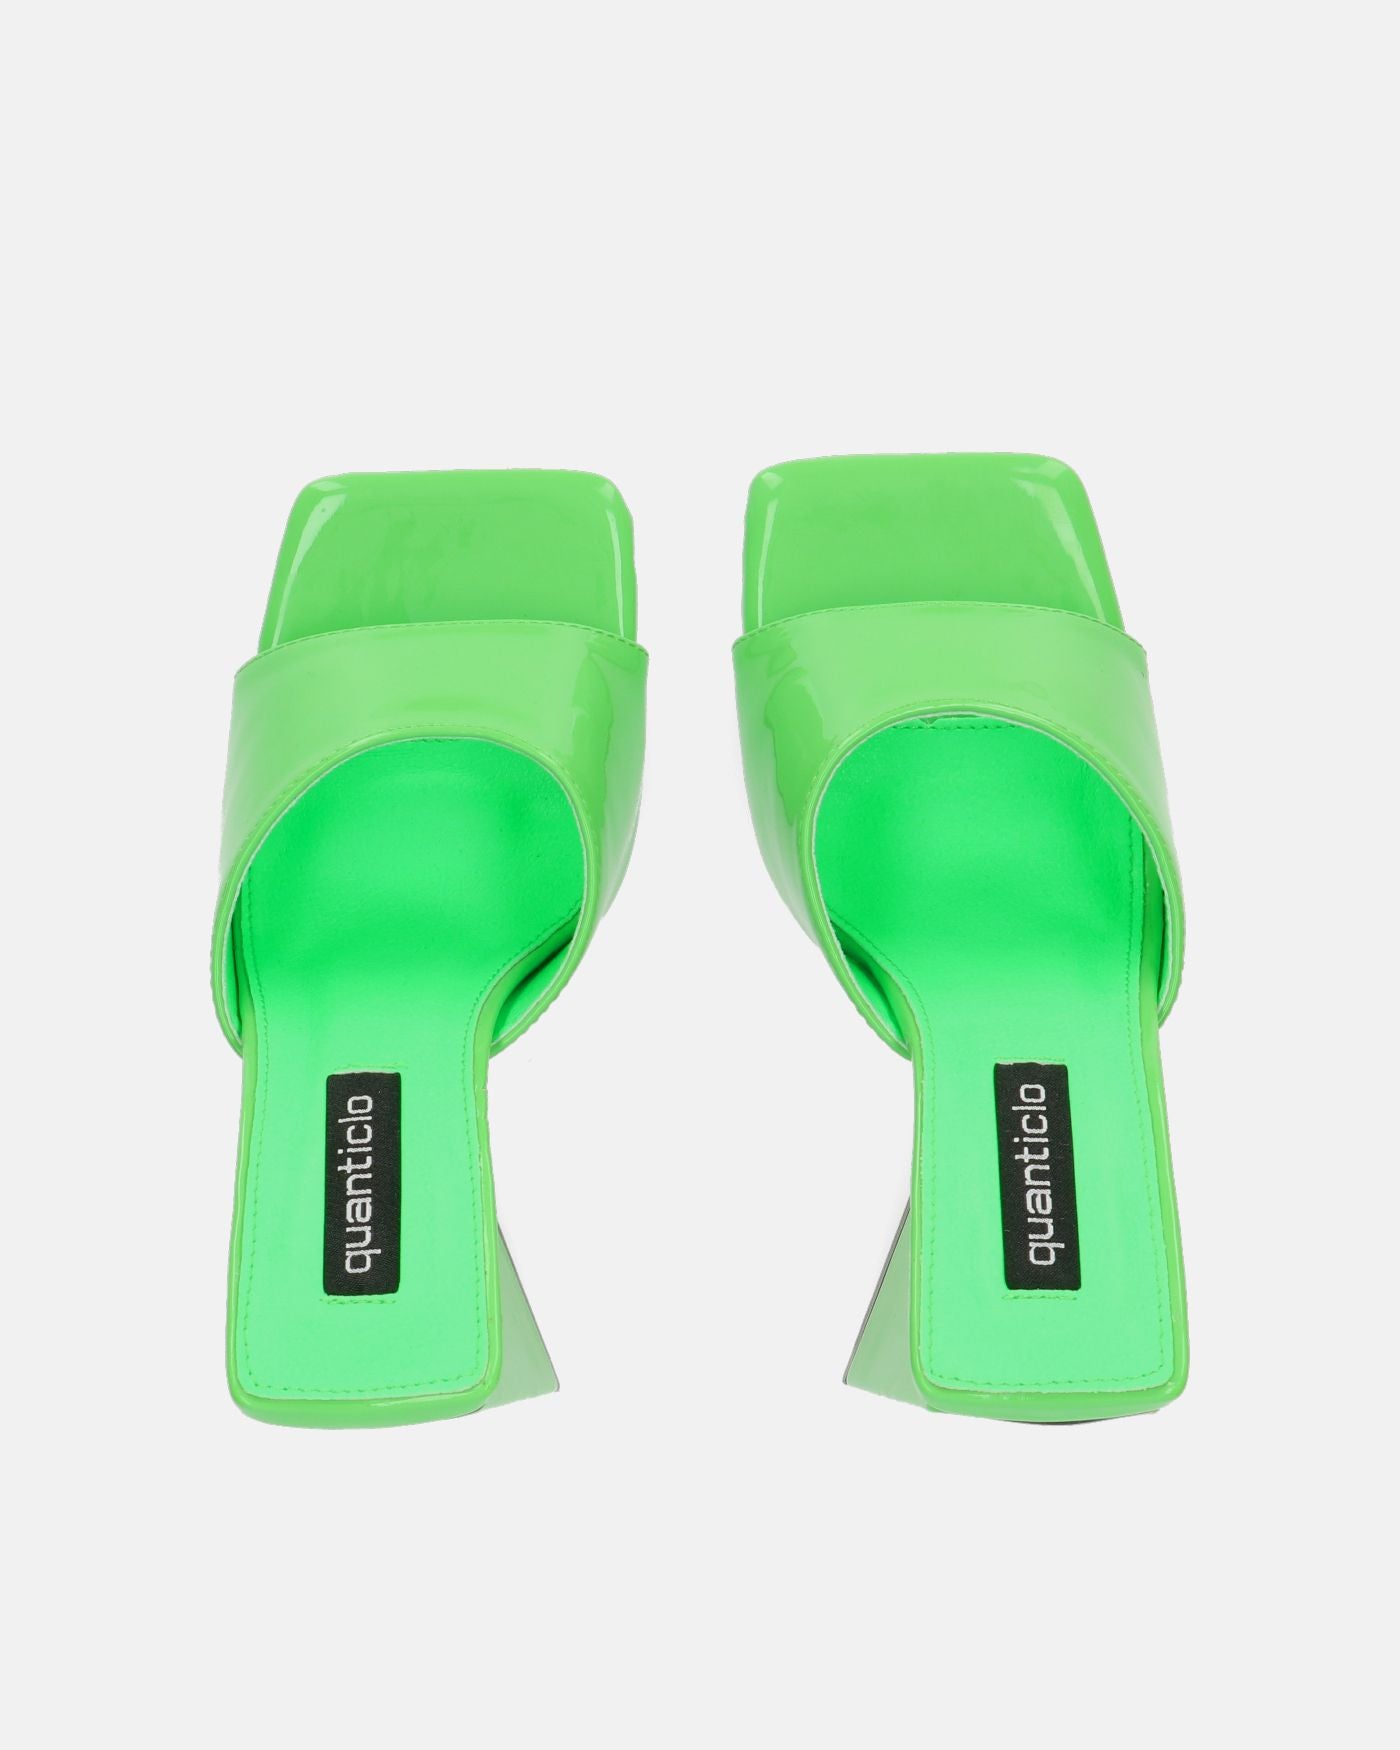 KAMELYA - scarpe con tacco squadrato in glassy verde